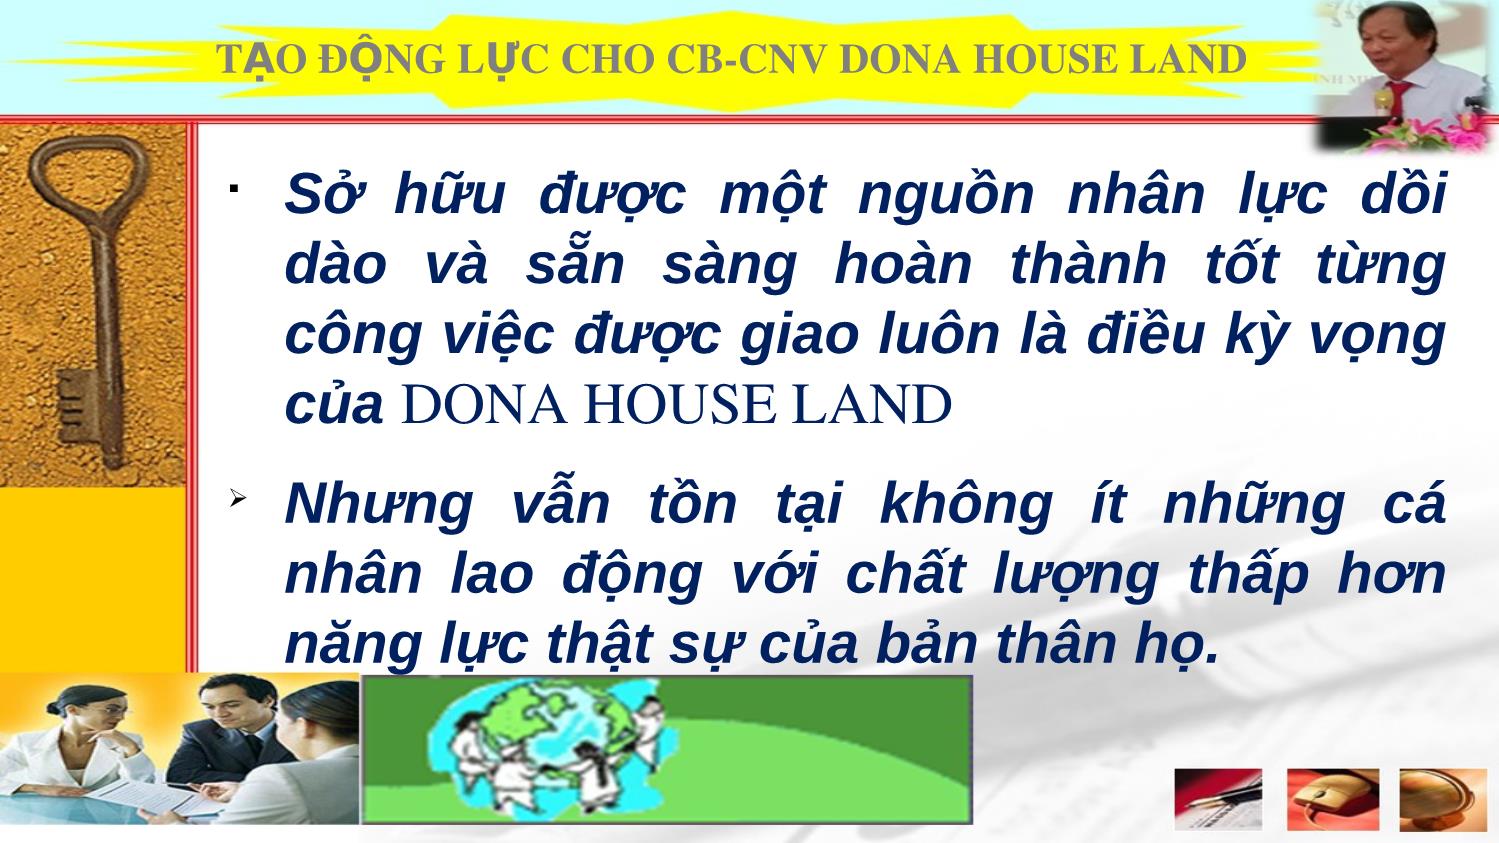 Bài giảng Tạo động lực cho cho cán bộ, công nhân viên Dona House Land trang 4